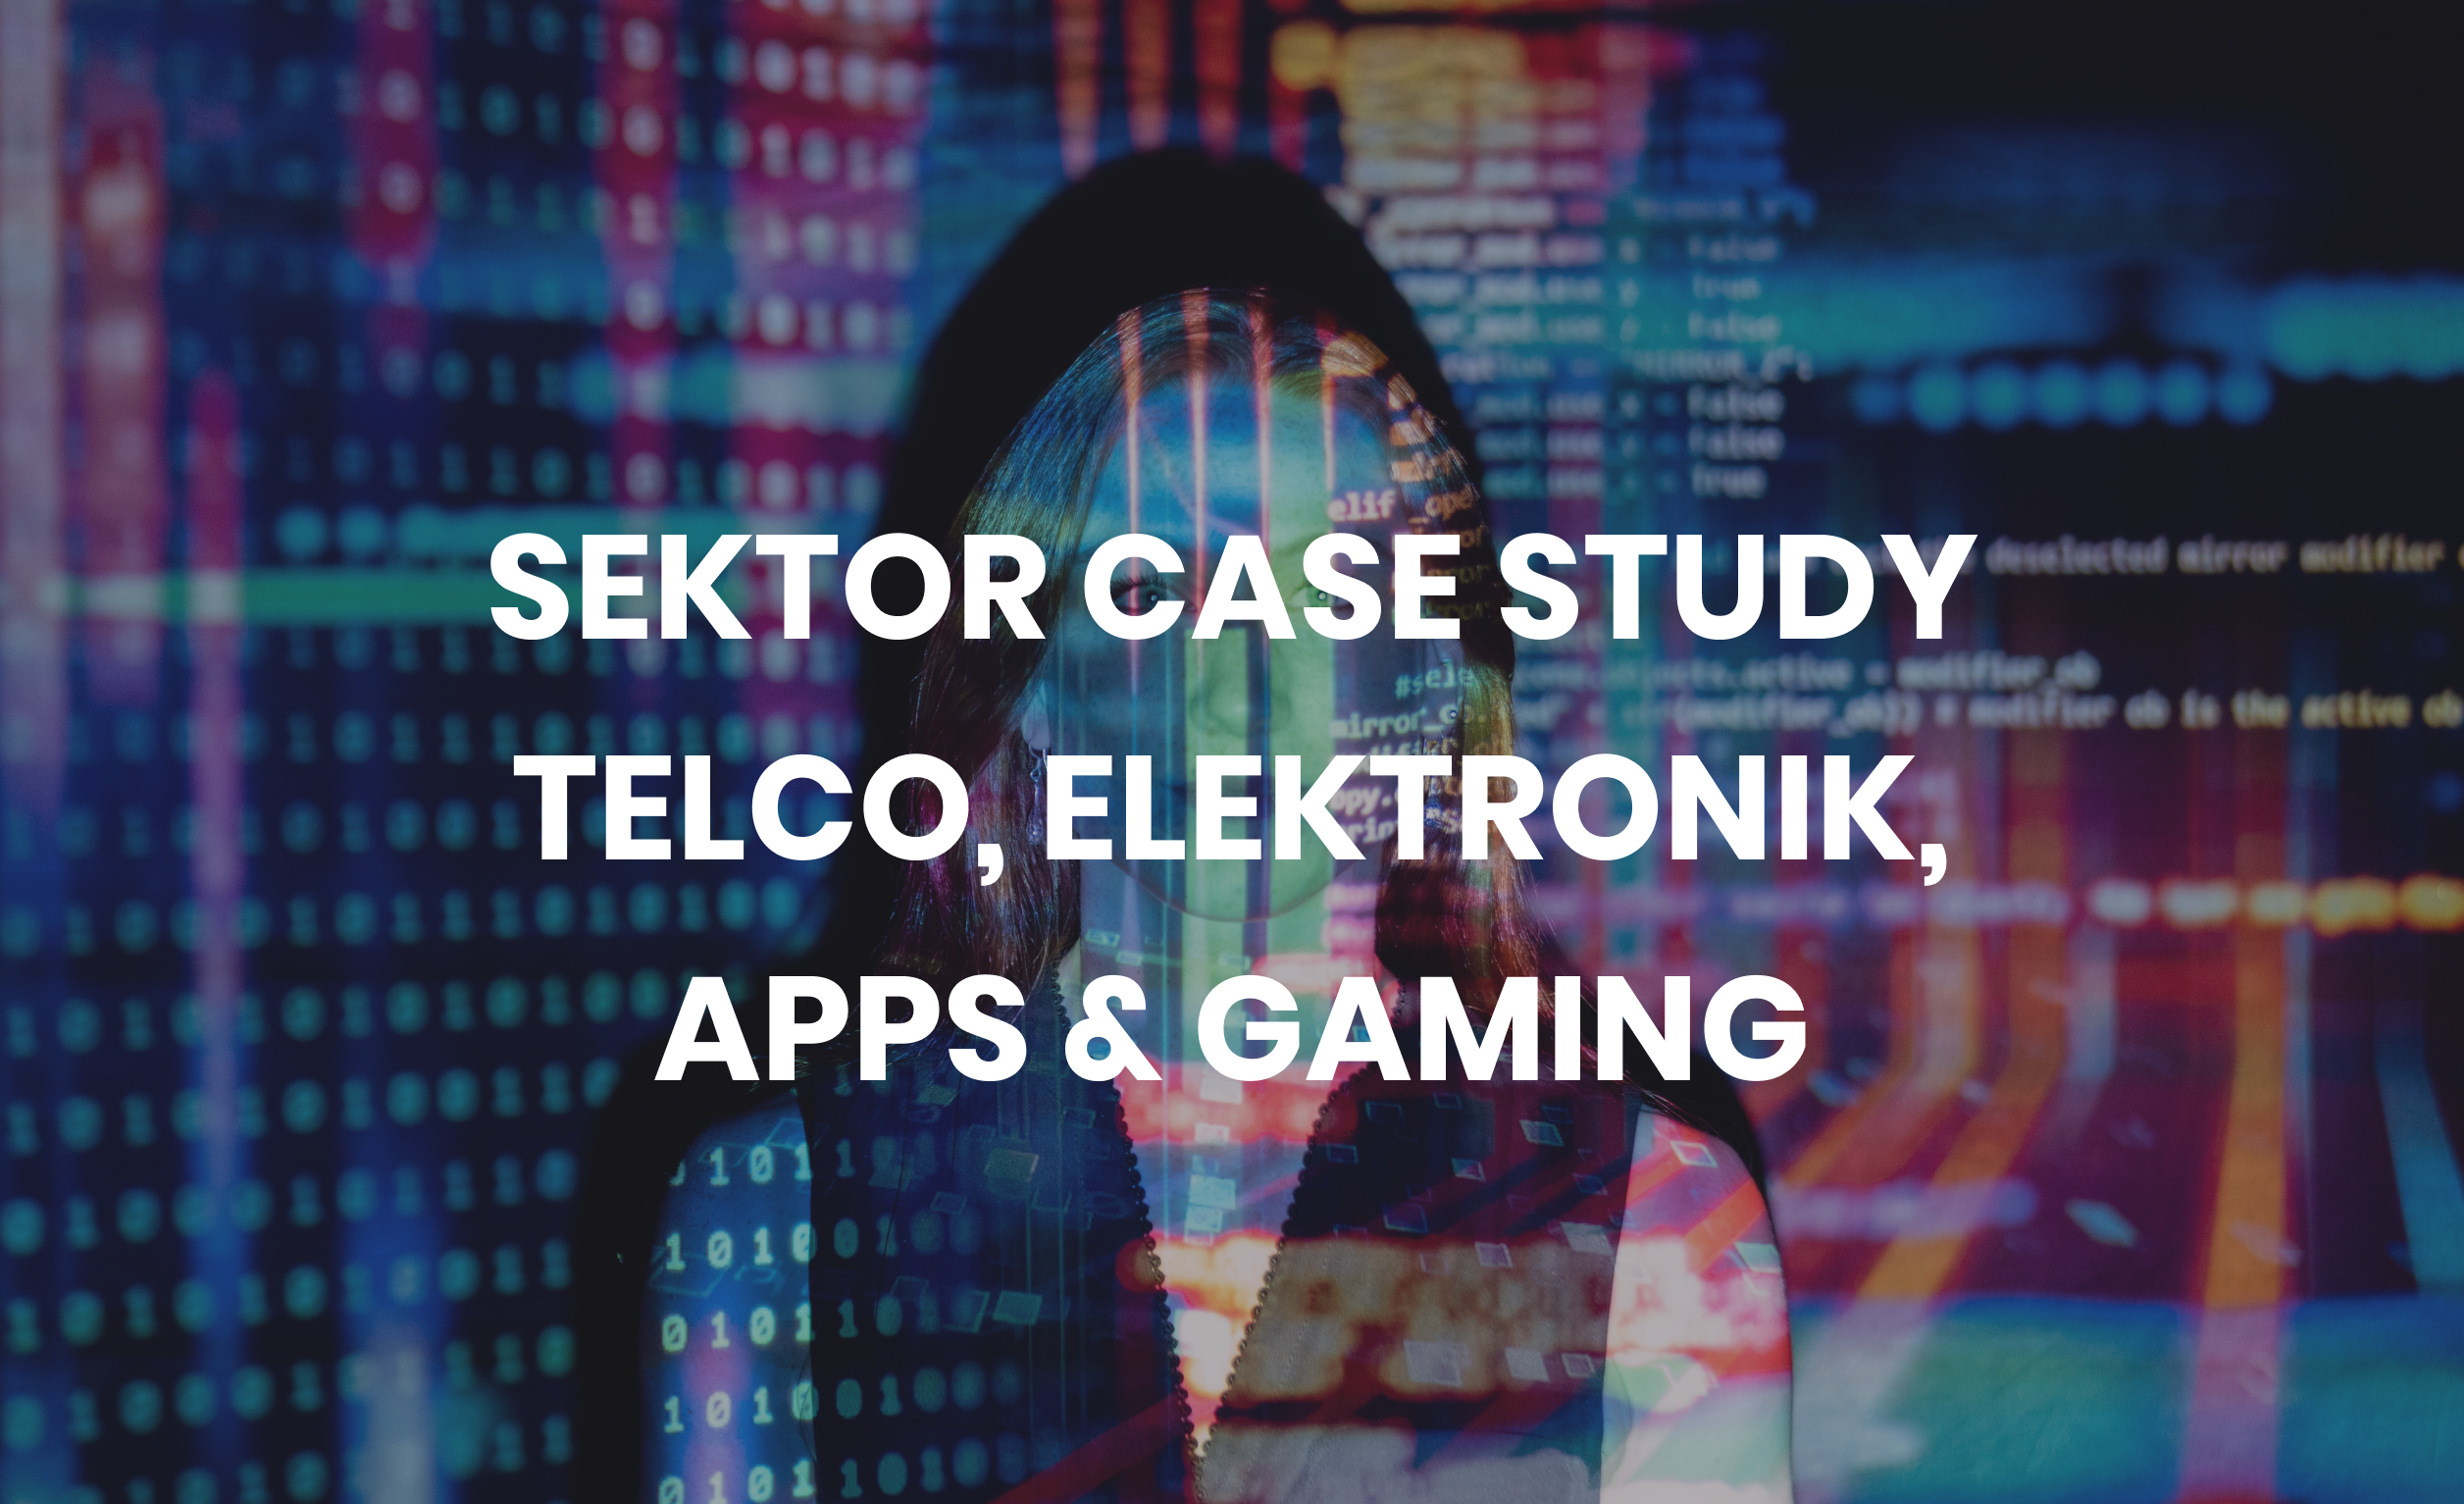 Sektor Case Study Telekommunikation, Elektronik, Apps & Gaming